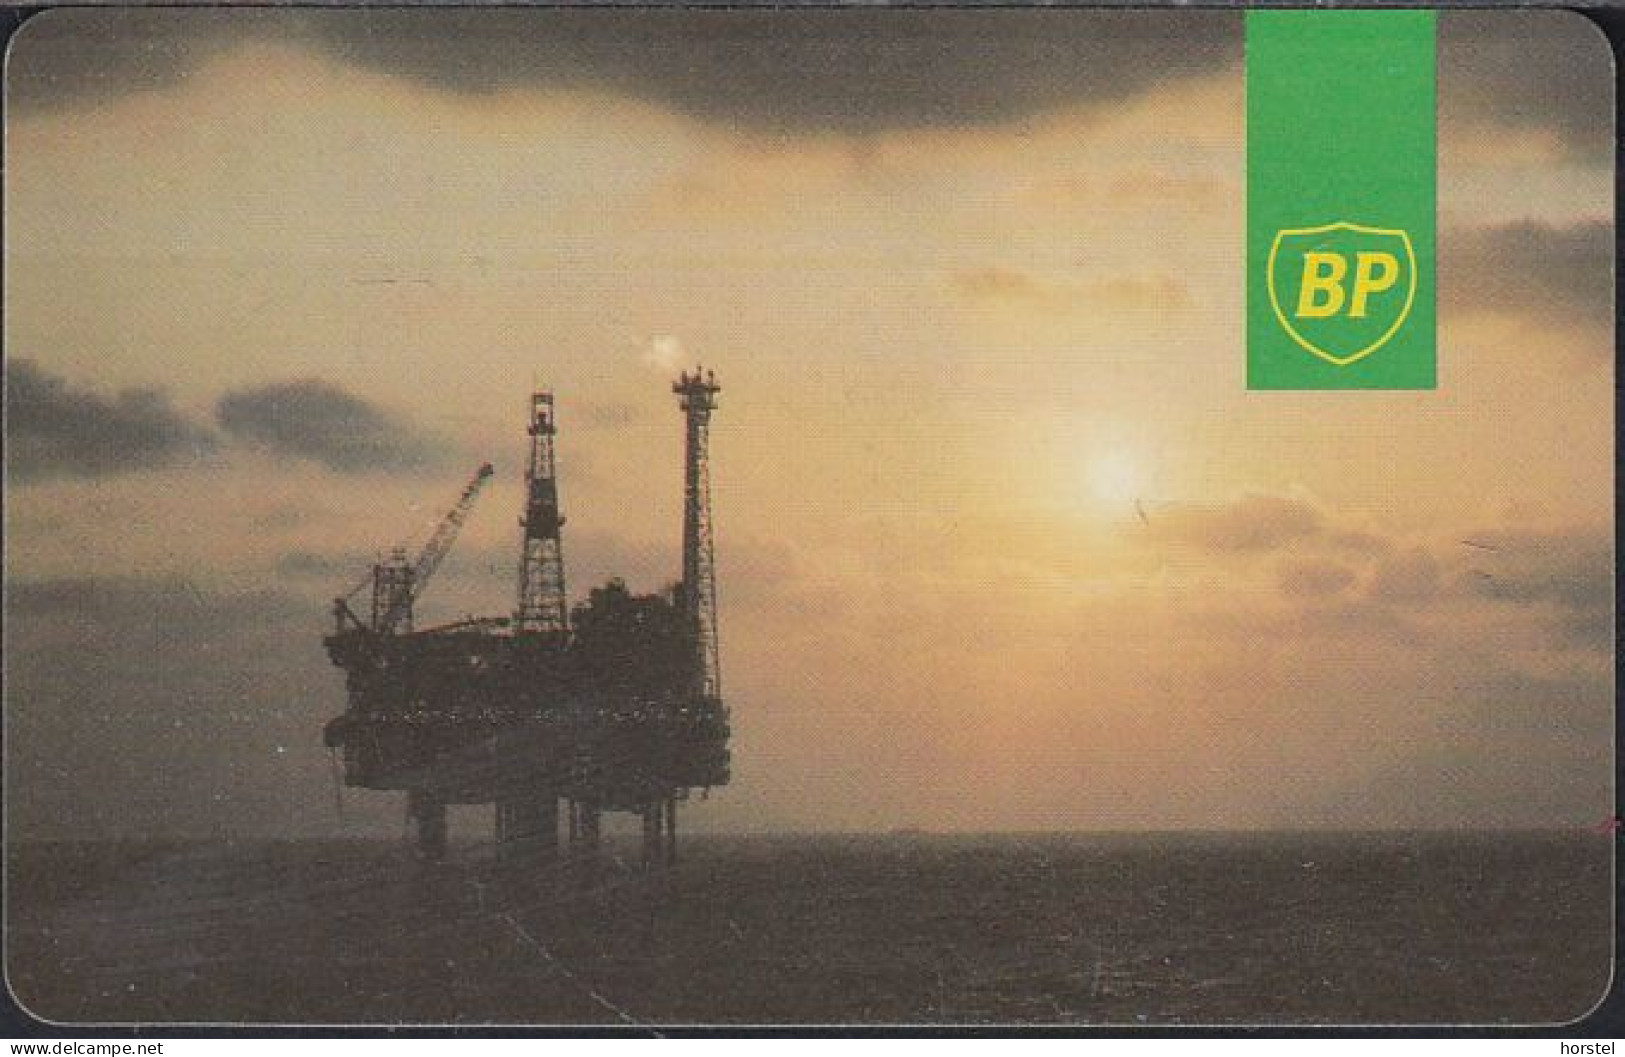 UK - GB-OIL-AUT-0001 Payphone IPL Autelca - BP - Oil Bohrinsel - 20 Units - Mint - Plateformes Pétrolières